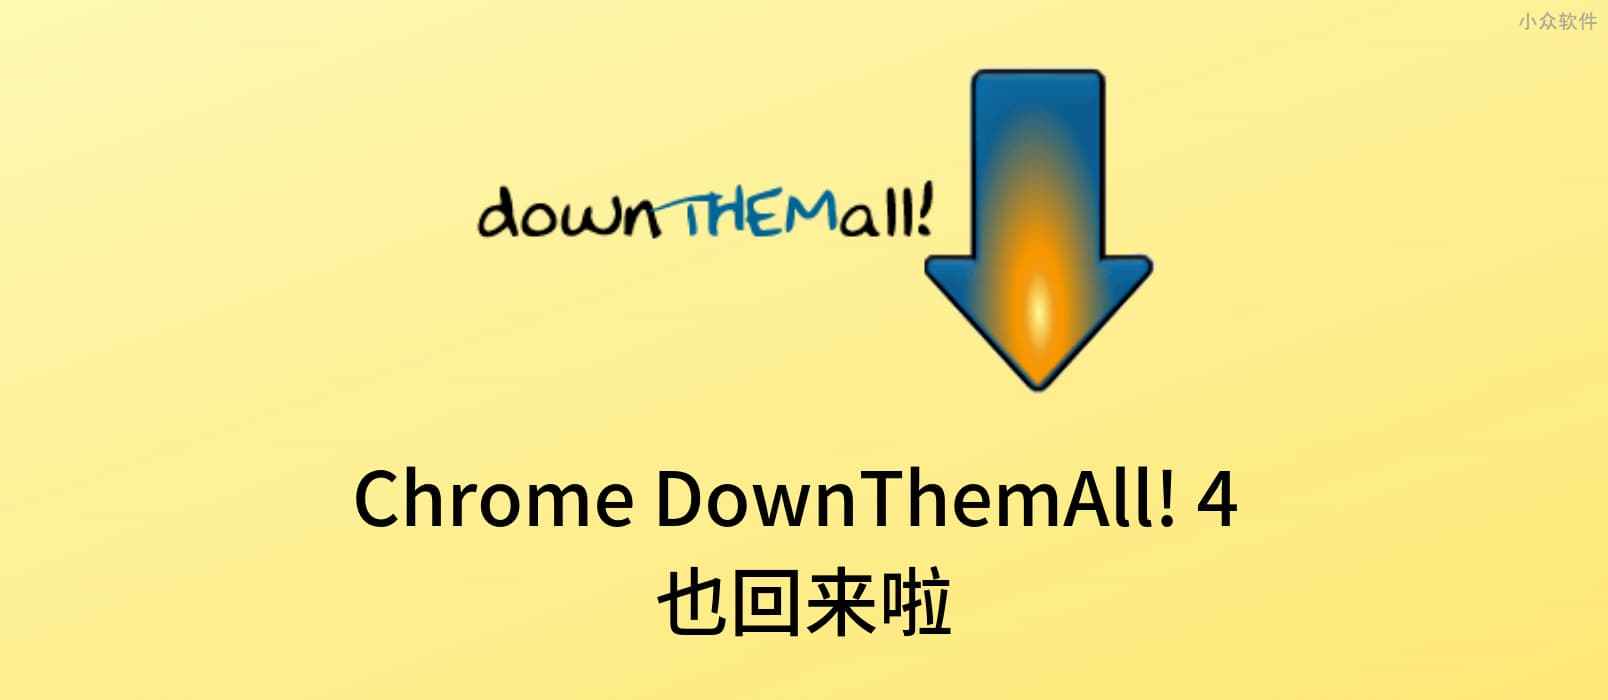 著名浏览器下载增强插件 DownThemAll! 4 发布 Chrome、Opera 版本